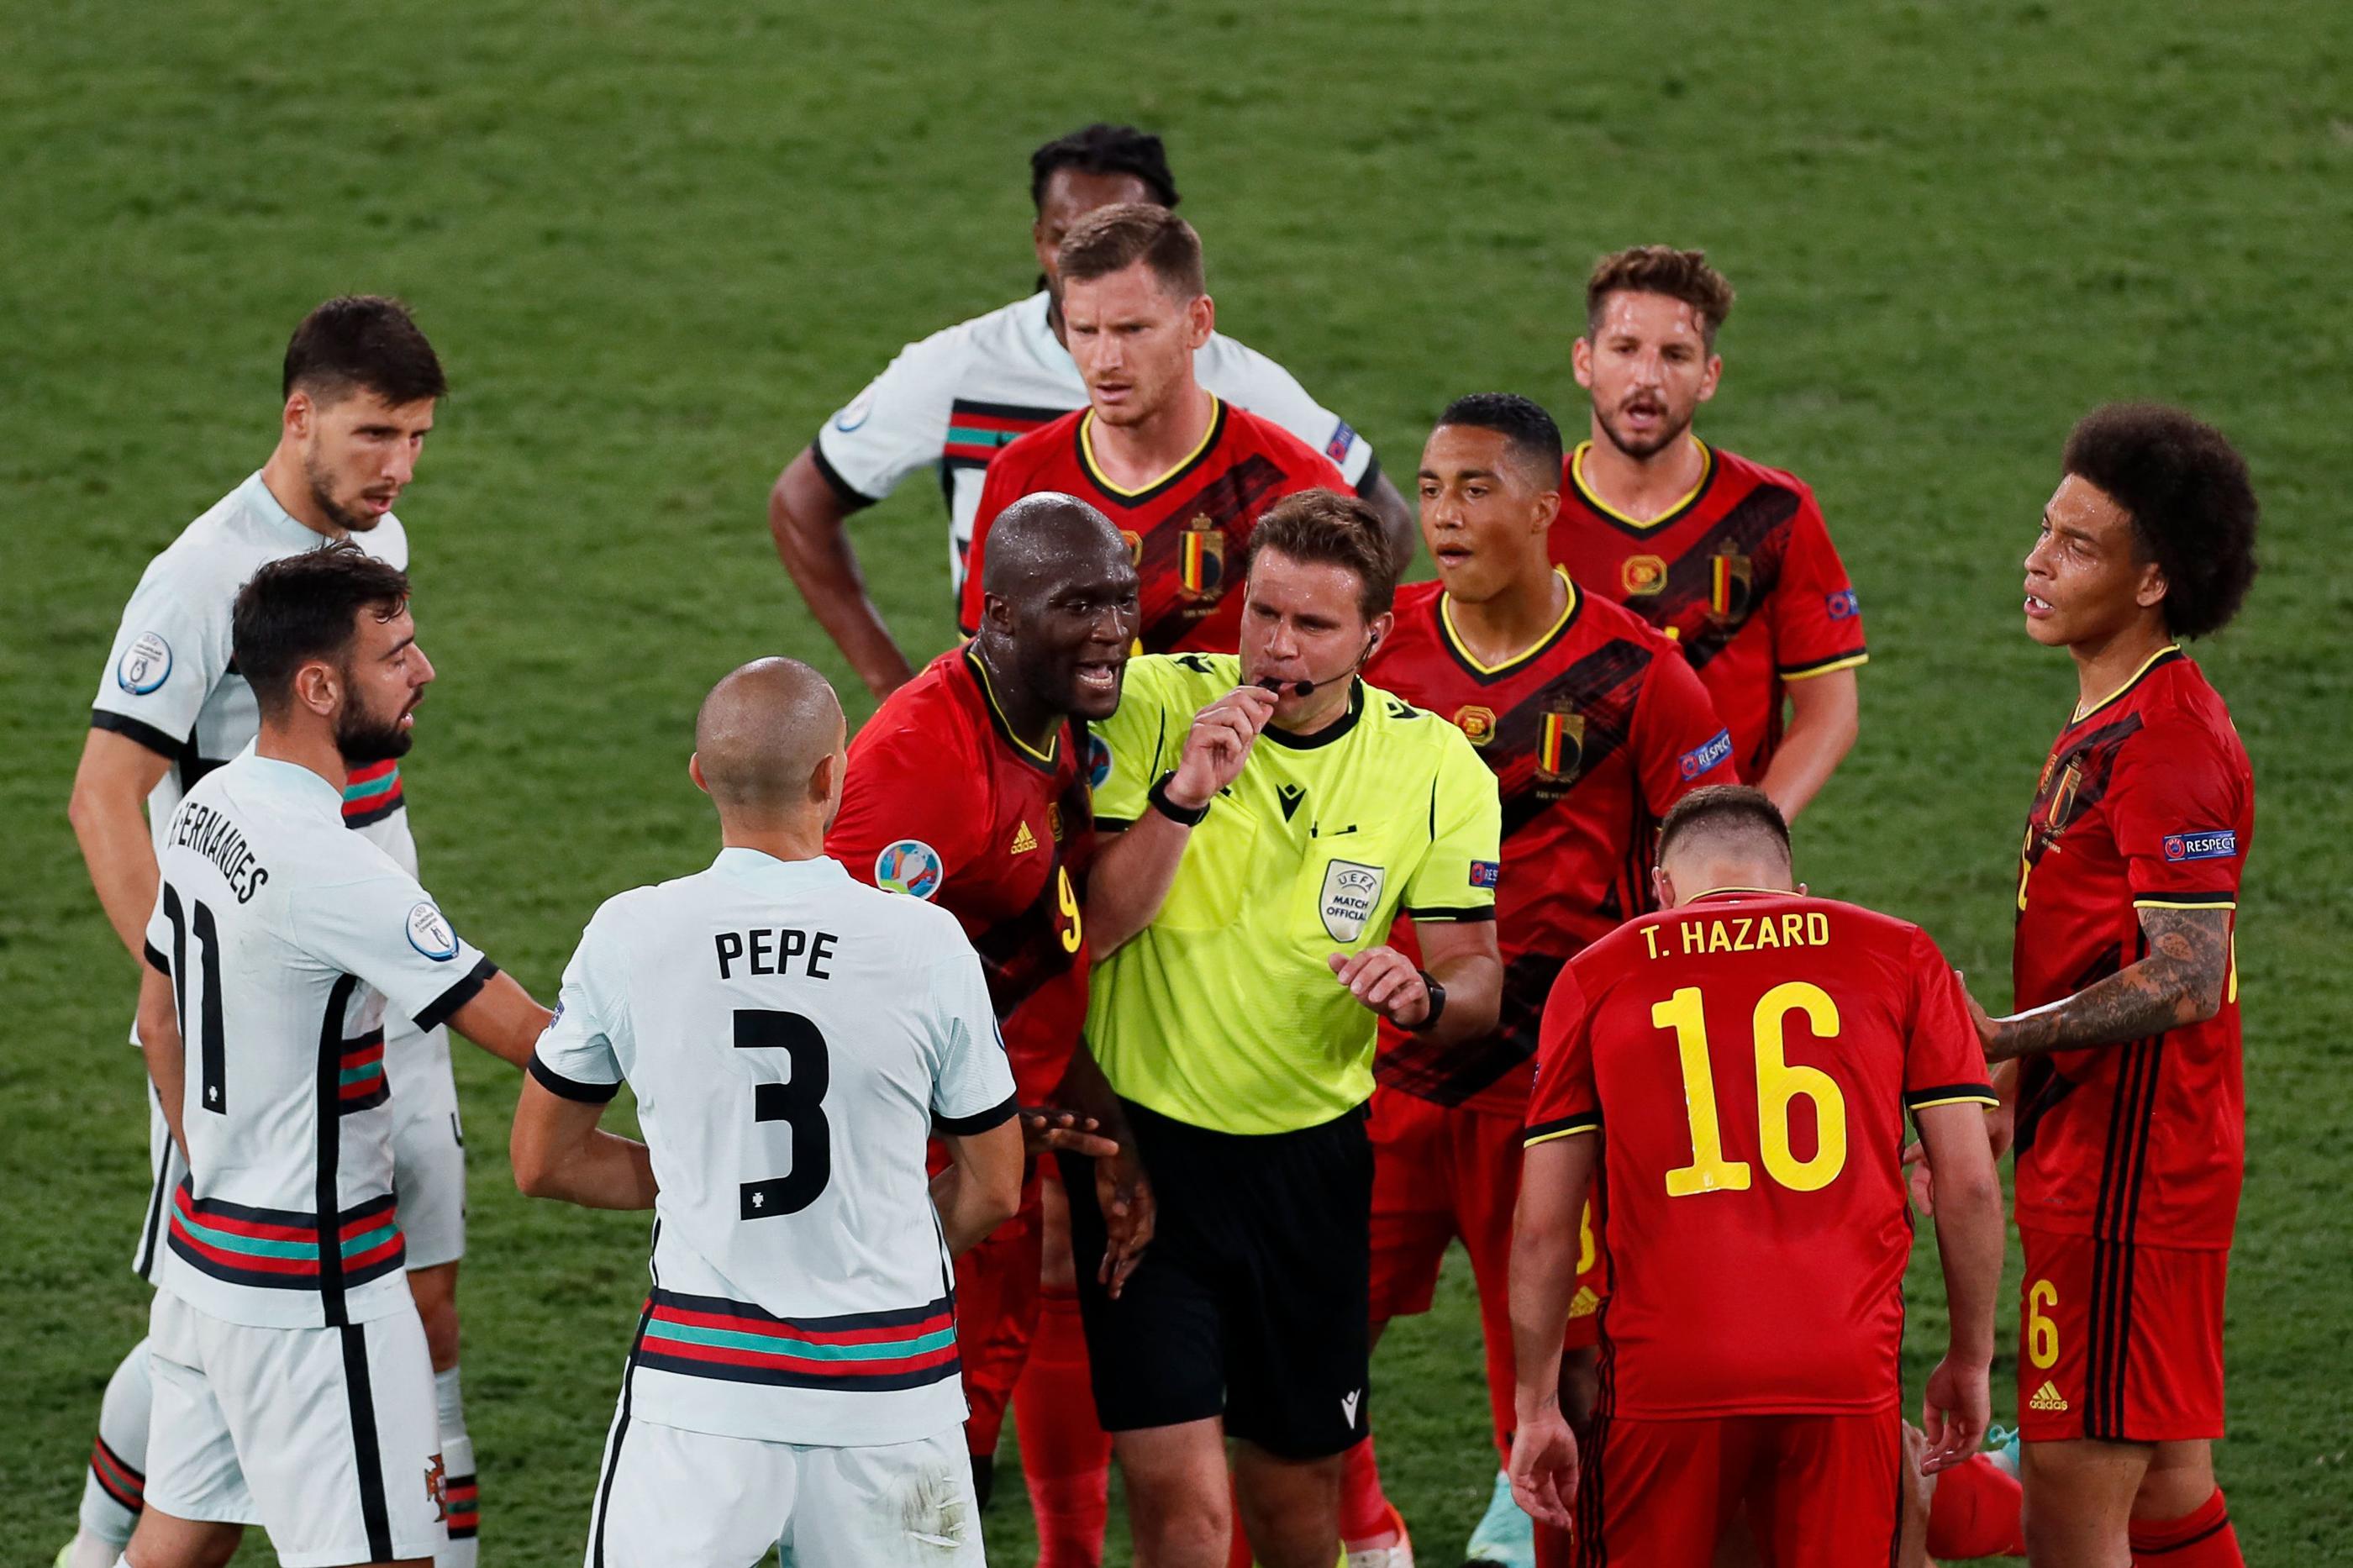 L'UEFA ne veut plus voir des scènes d'attroupement autour des arbitres. (Photo by Jose Manuel Vidal / POOL / AFP)